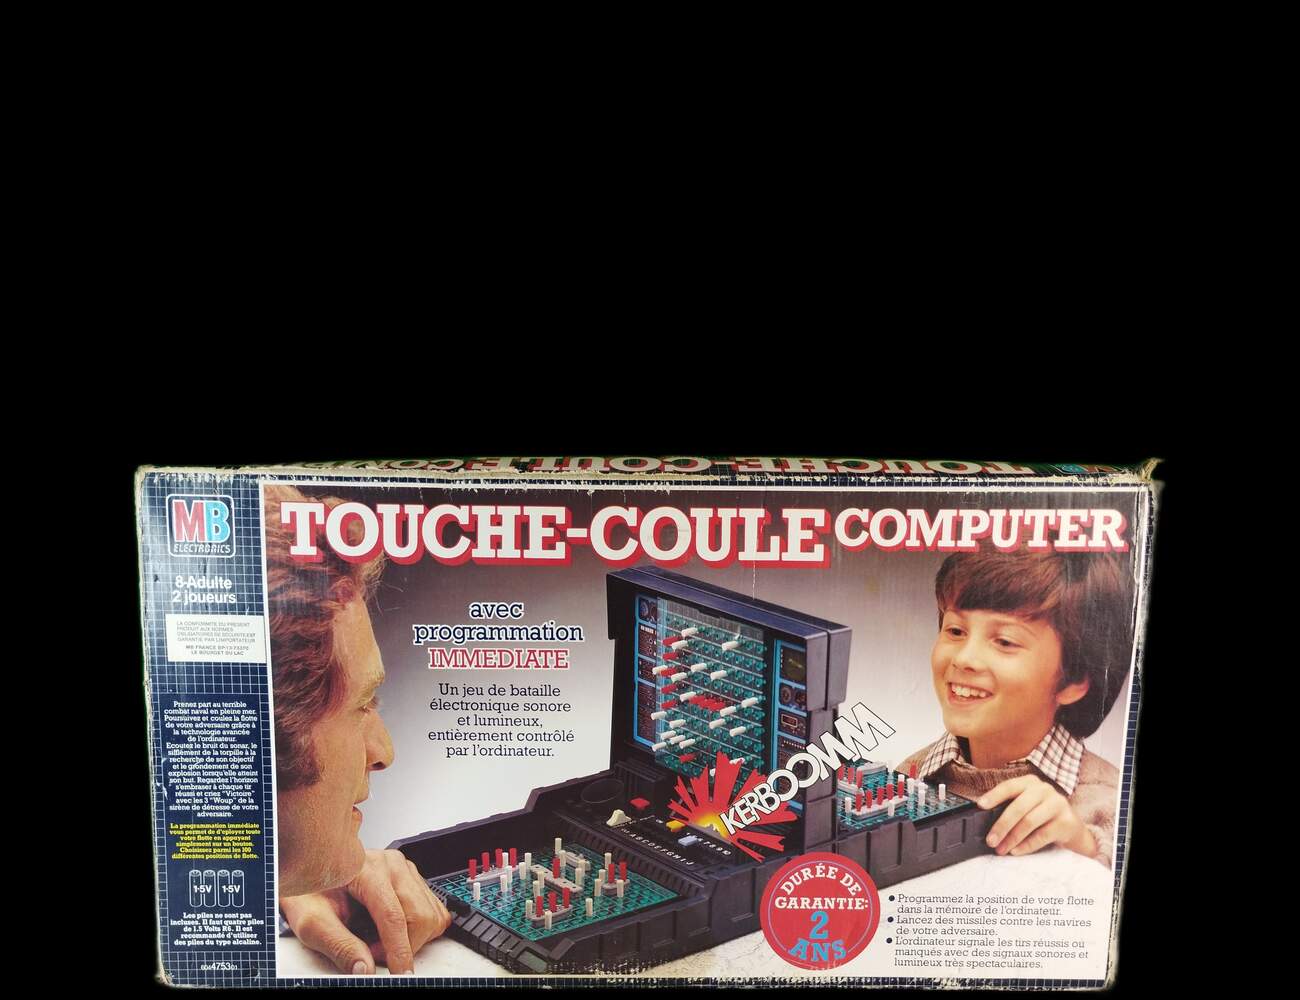 touché-coulé computer - Older Games